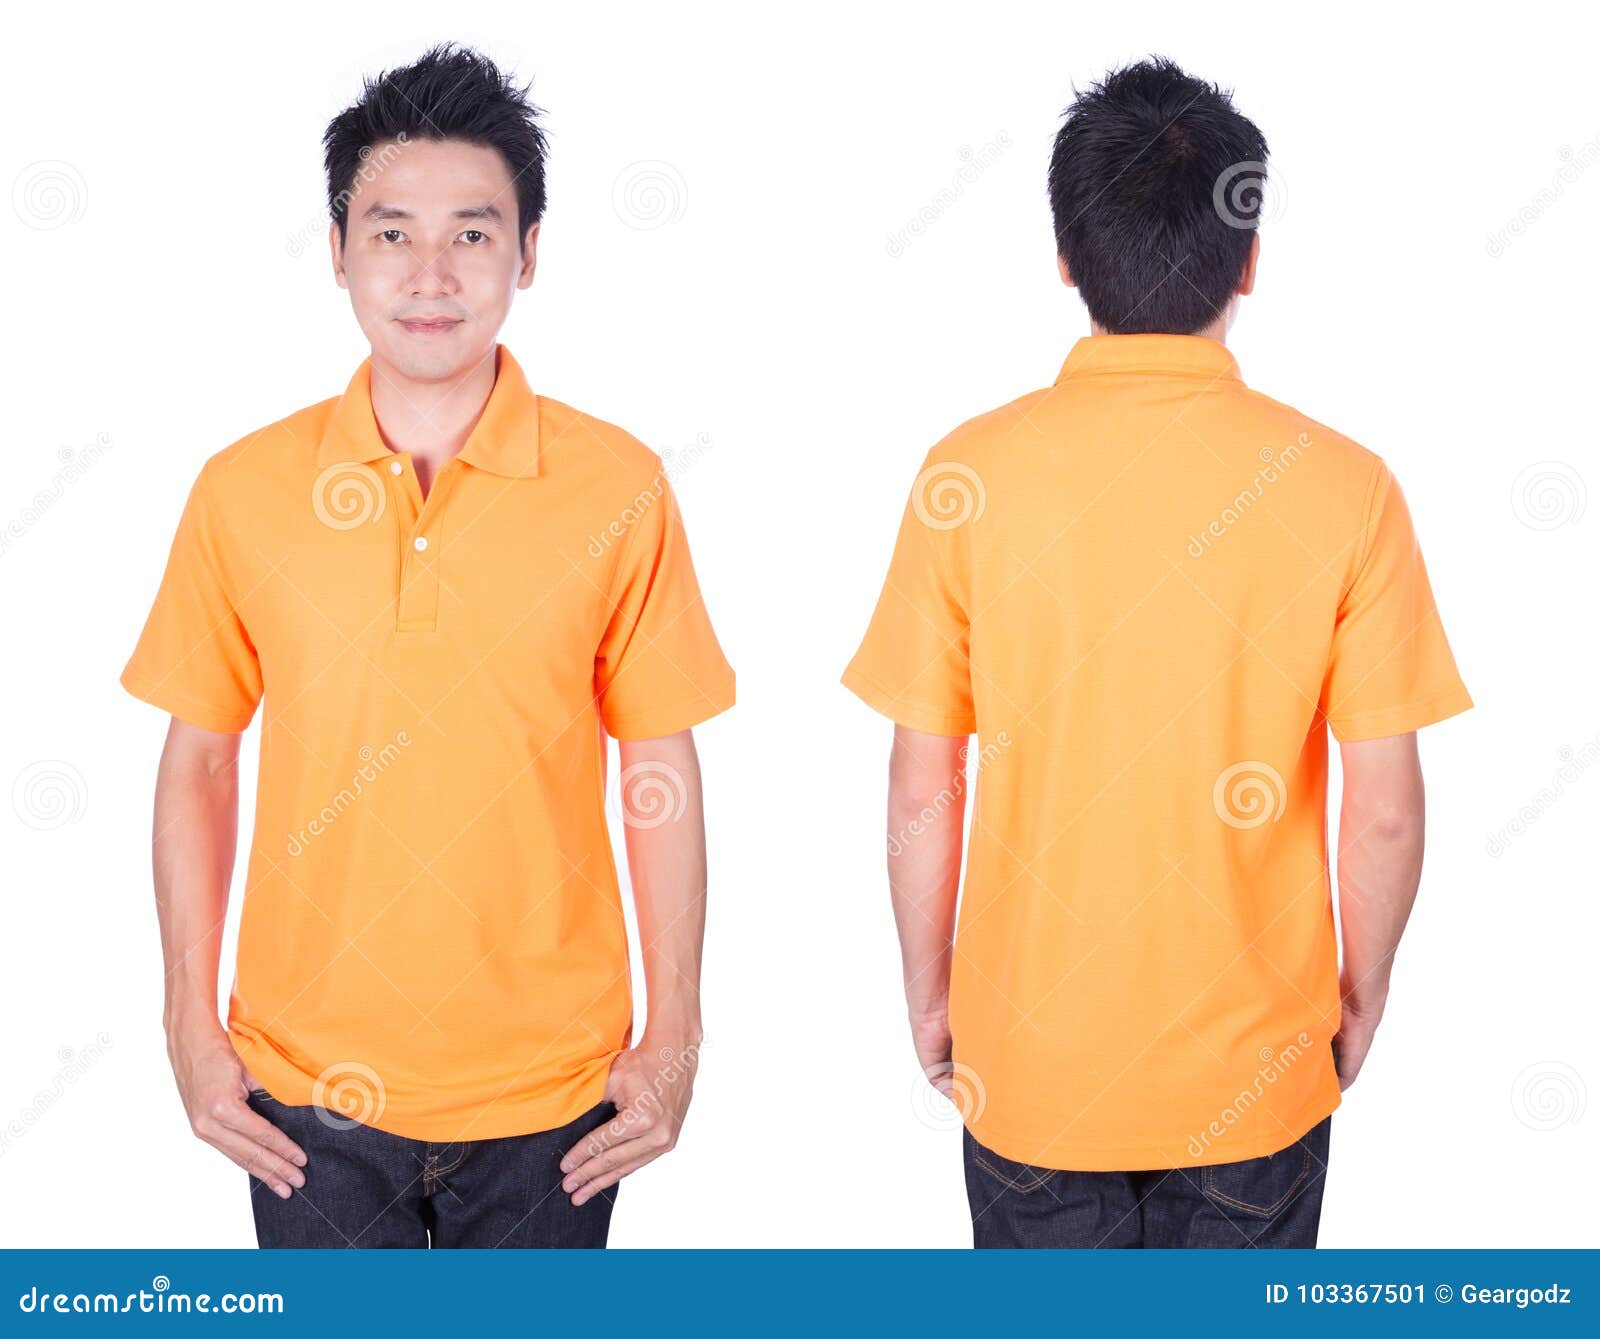 Man with Orange Polo Shirt on White Background Stock Image - Image of ...